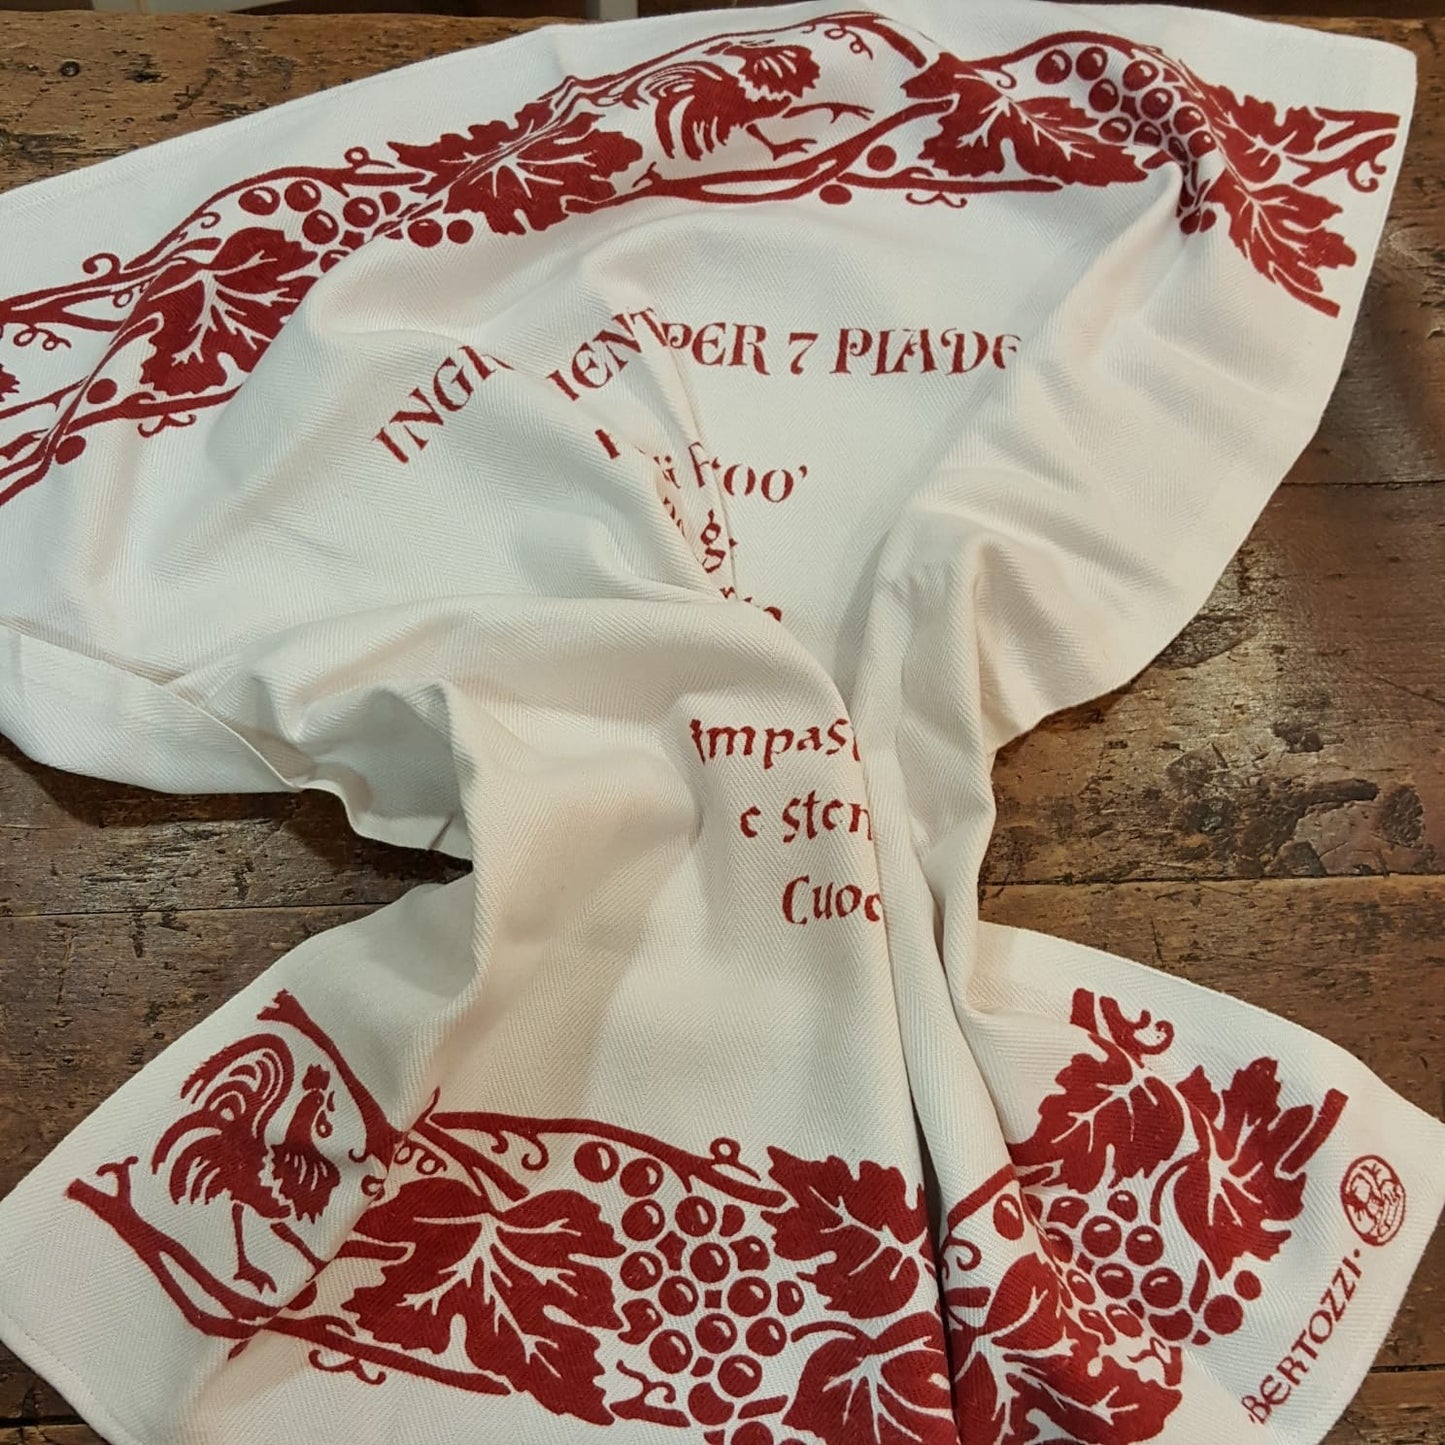 Tea towel with piadina recipe with Romagna prints